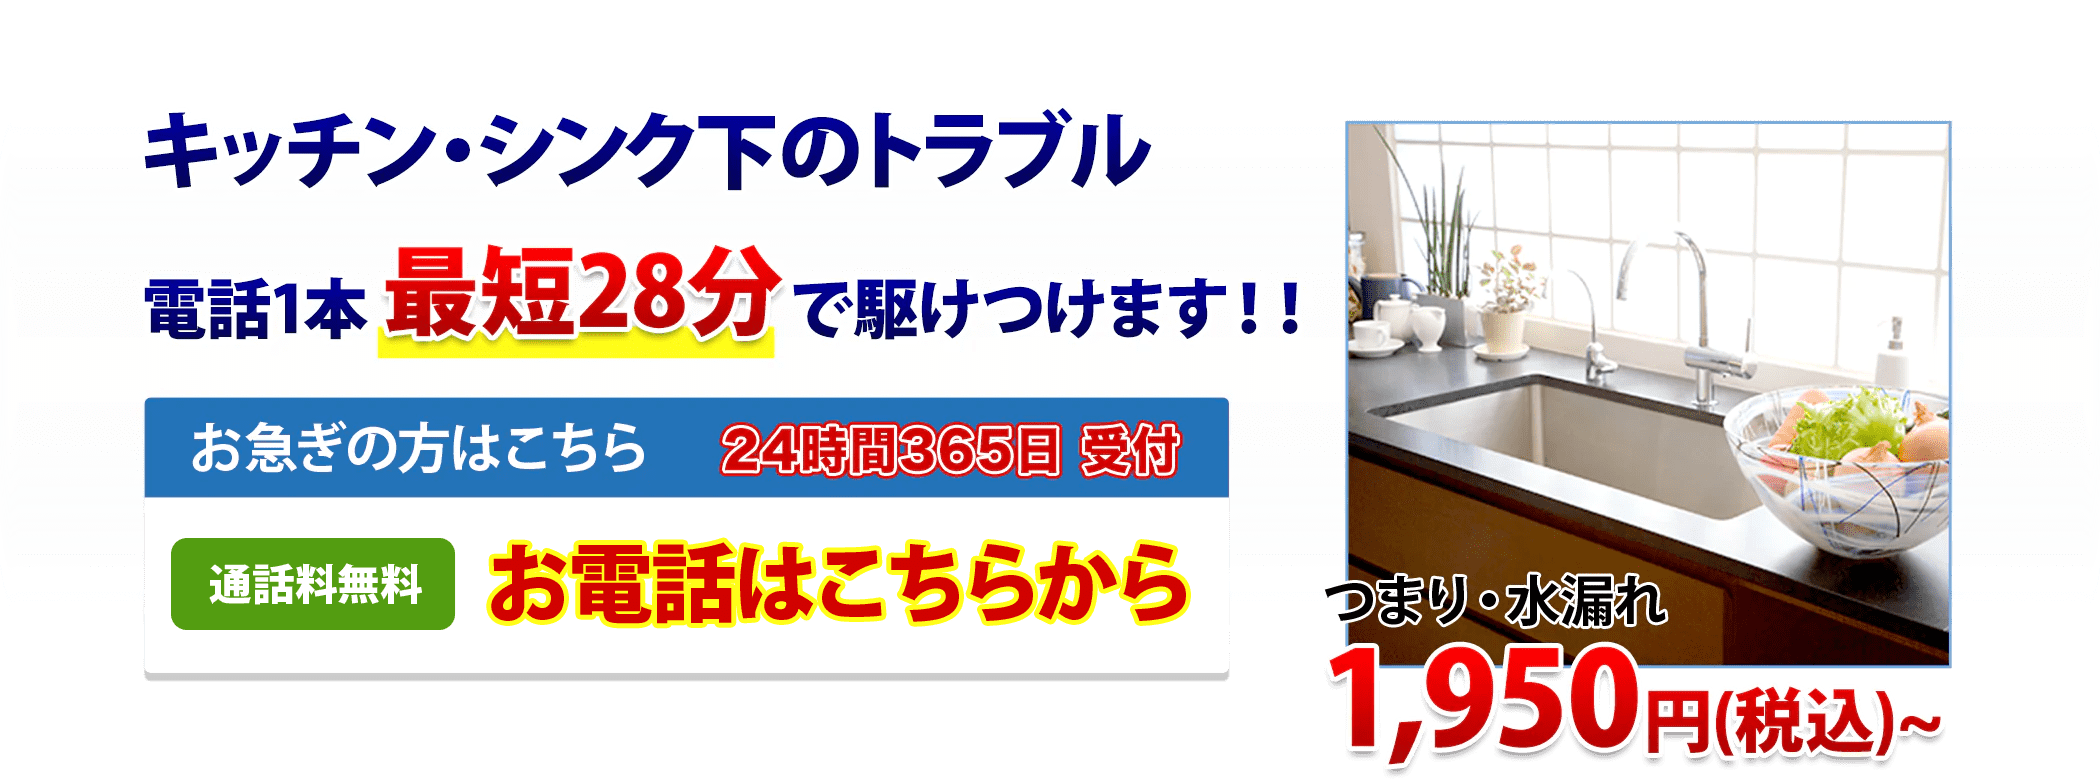 キッチン・シンク下のトラブル電話1本最短28分で駆けつけます!!